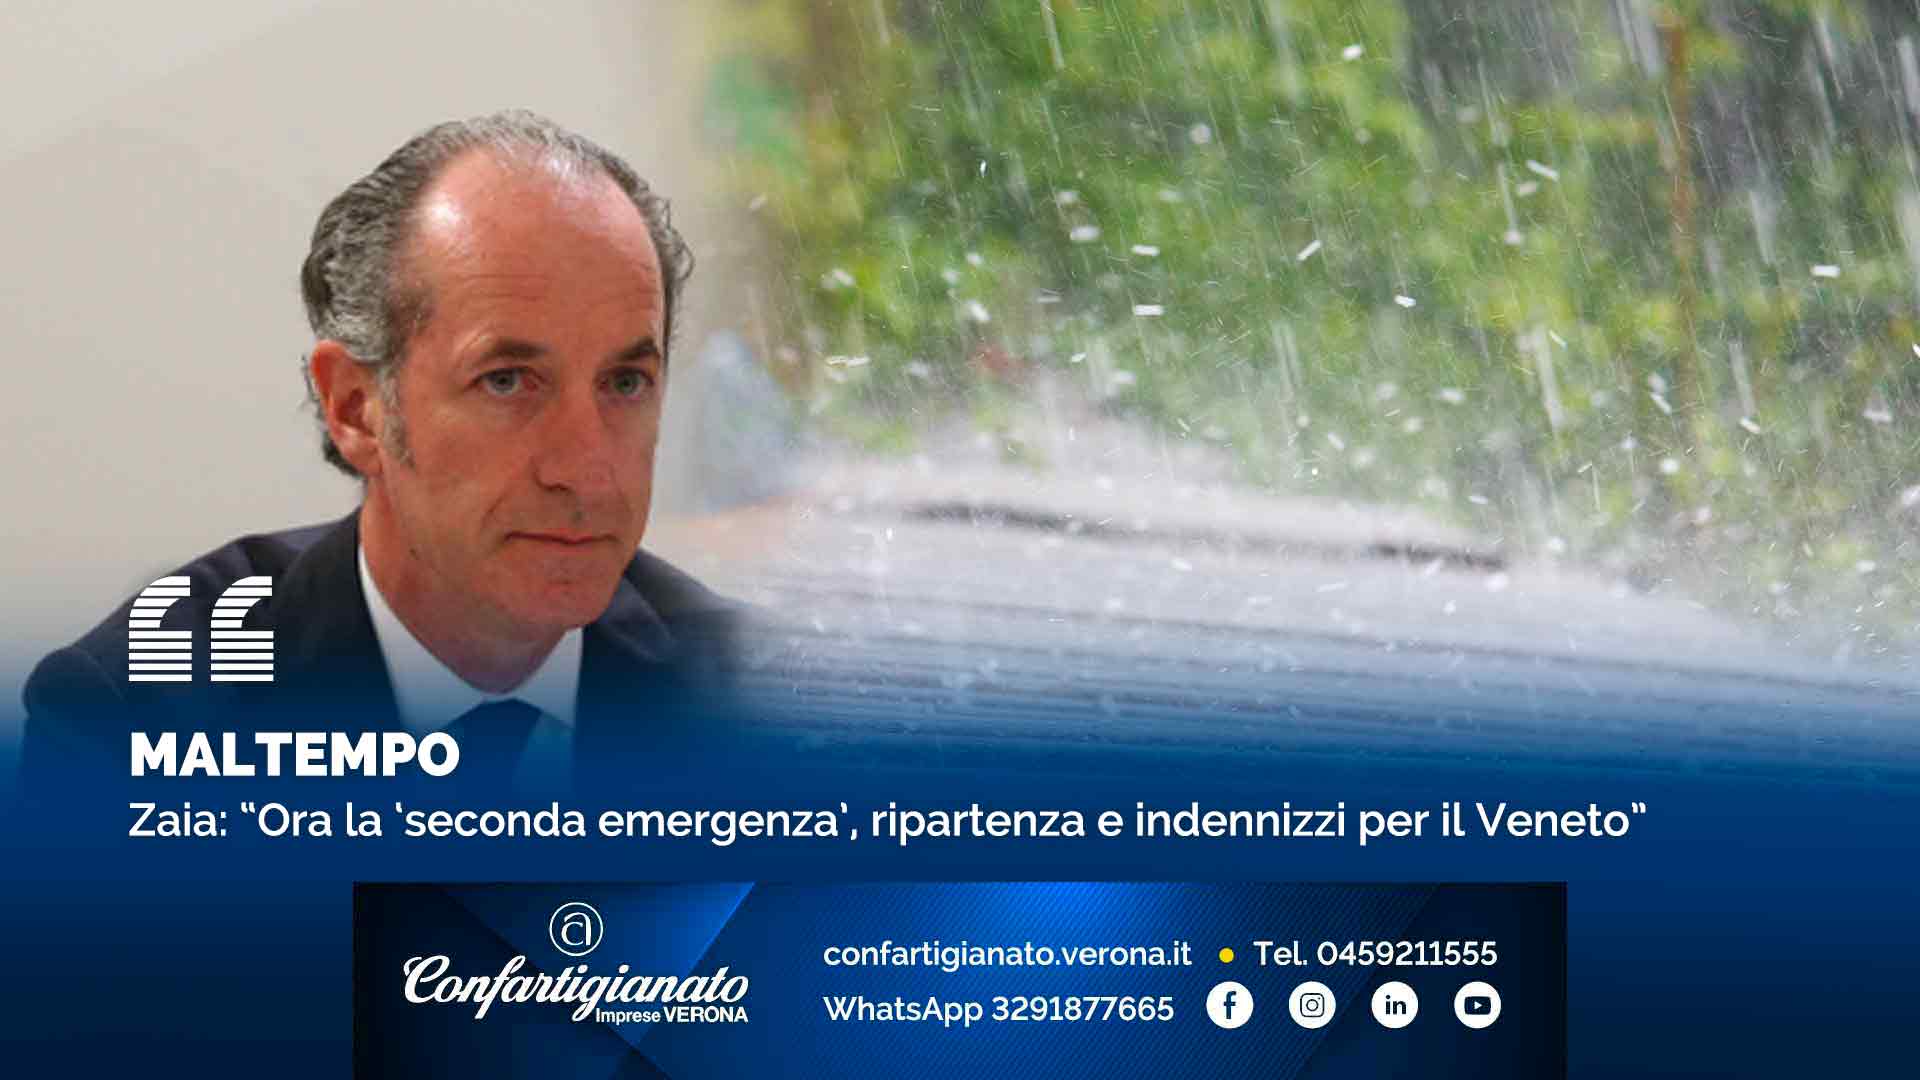 MALTEMPO – Zaia: “Ora la ‘seconda emergenza’, ripartenza e indennizzi per il Veneto”